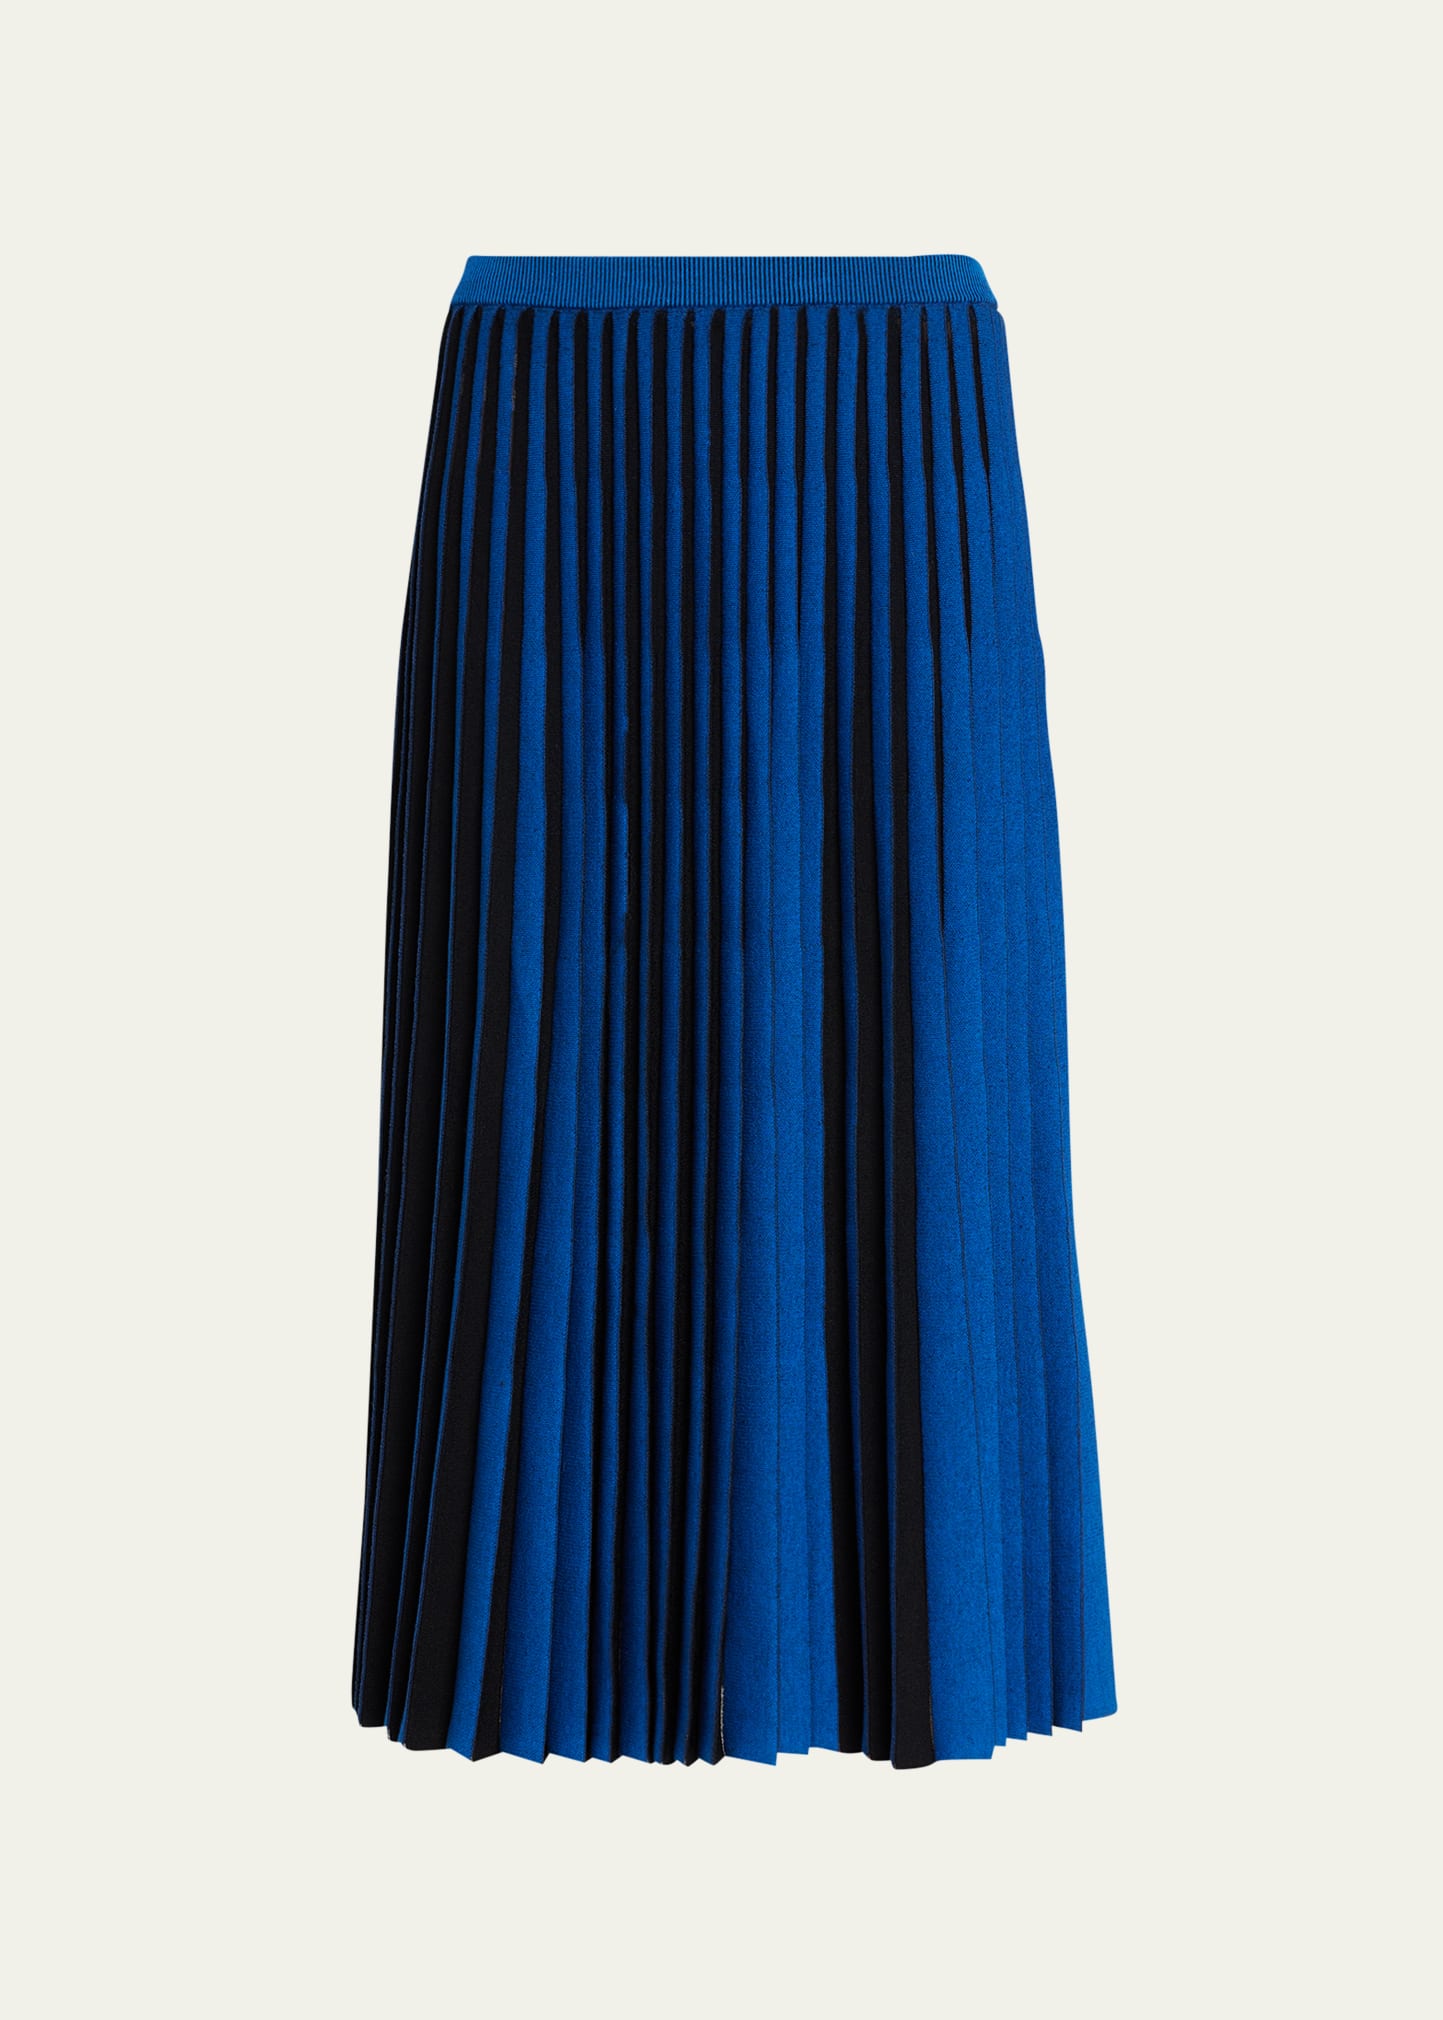 Proenza Schouler White Label Striped Knit Midi Skirt In Cerulean/black